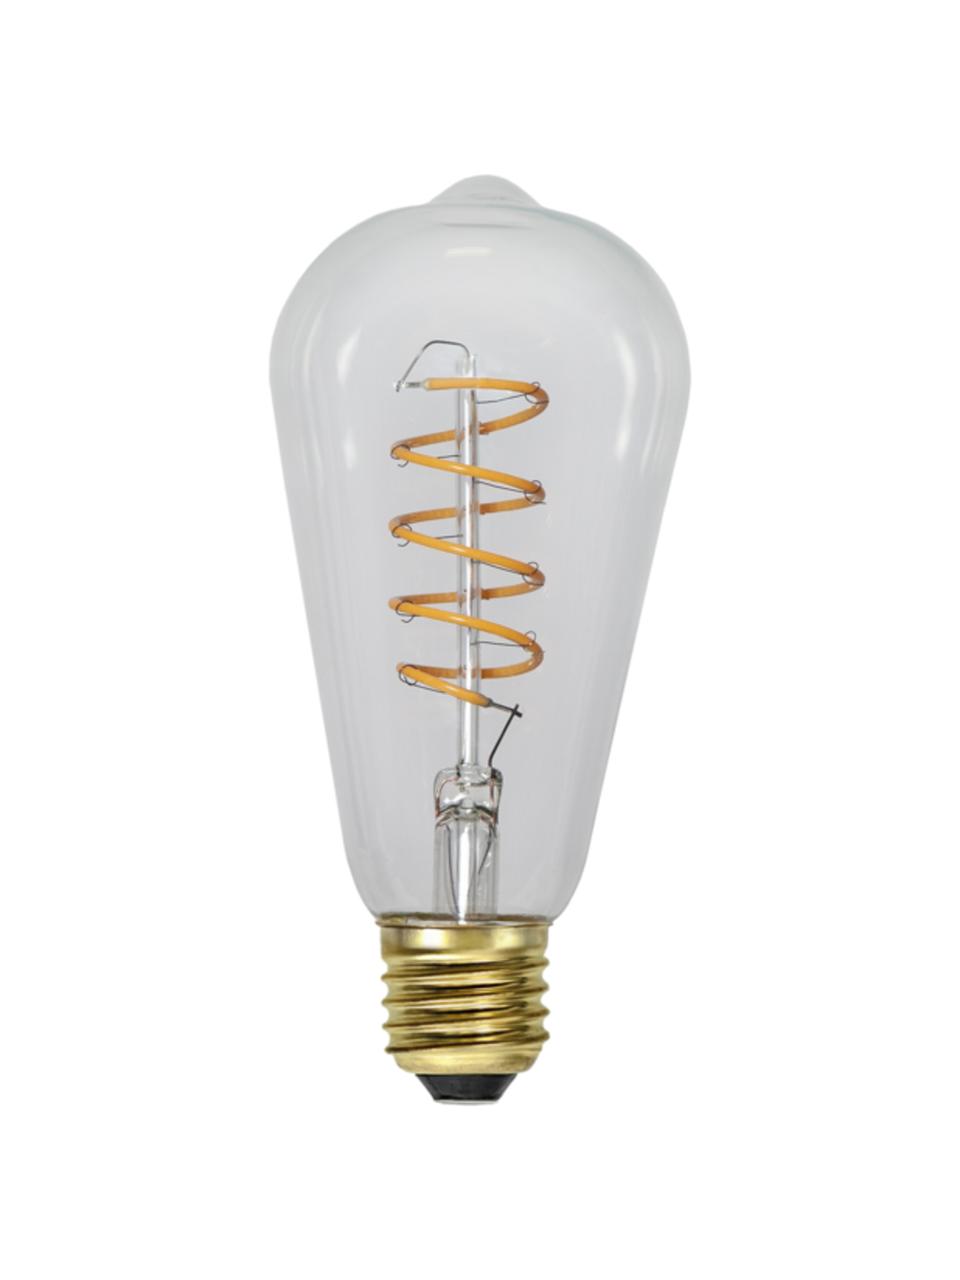 Ampoule (E27 - 270 lm), blanc chaud, intensité variable, 1 pièce, Transparent